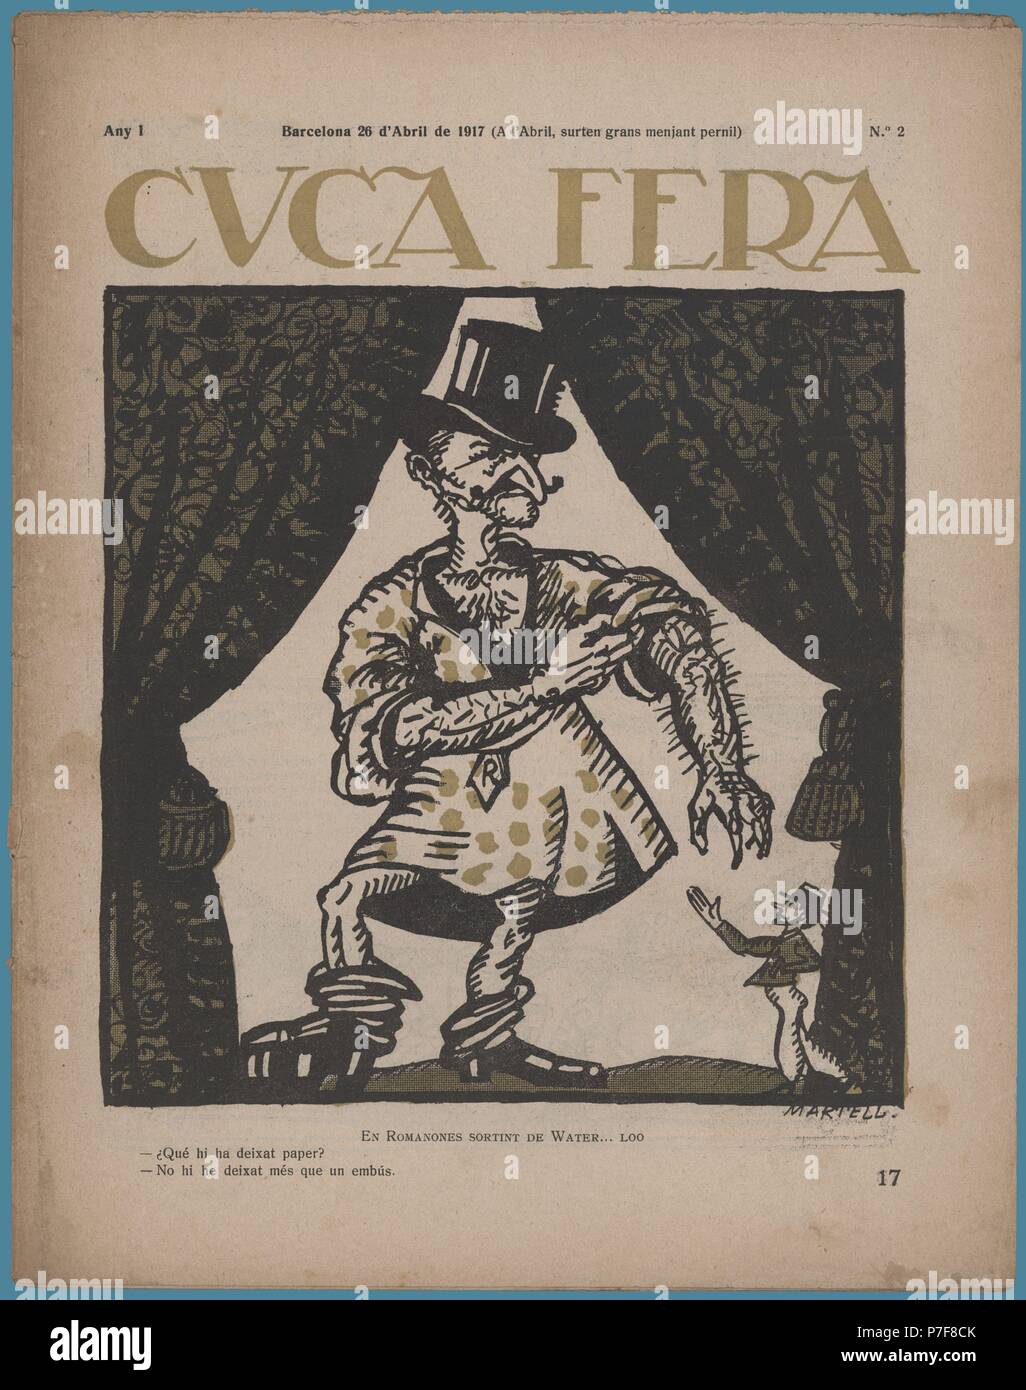 Portada de la revista Cuca Fera, número dos, editada en Barcelona, abril de 1917. Caricatura satírica del conde de Romanones, presidente del gobierno de España. Stock Photo